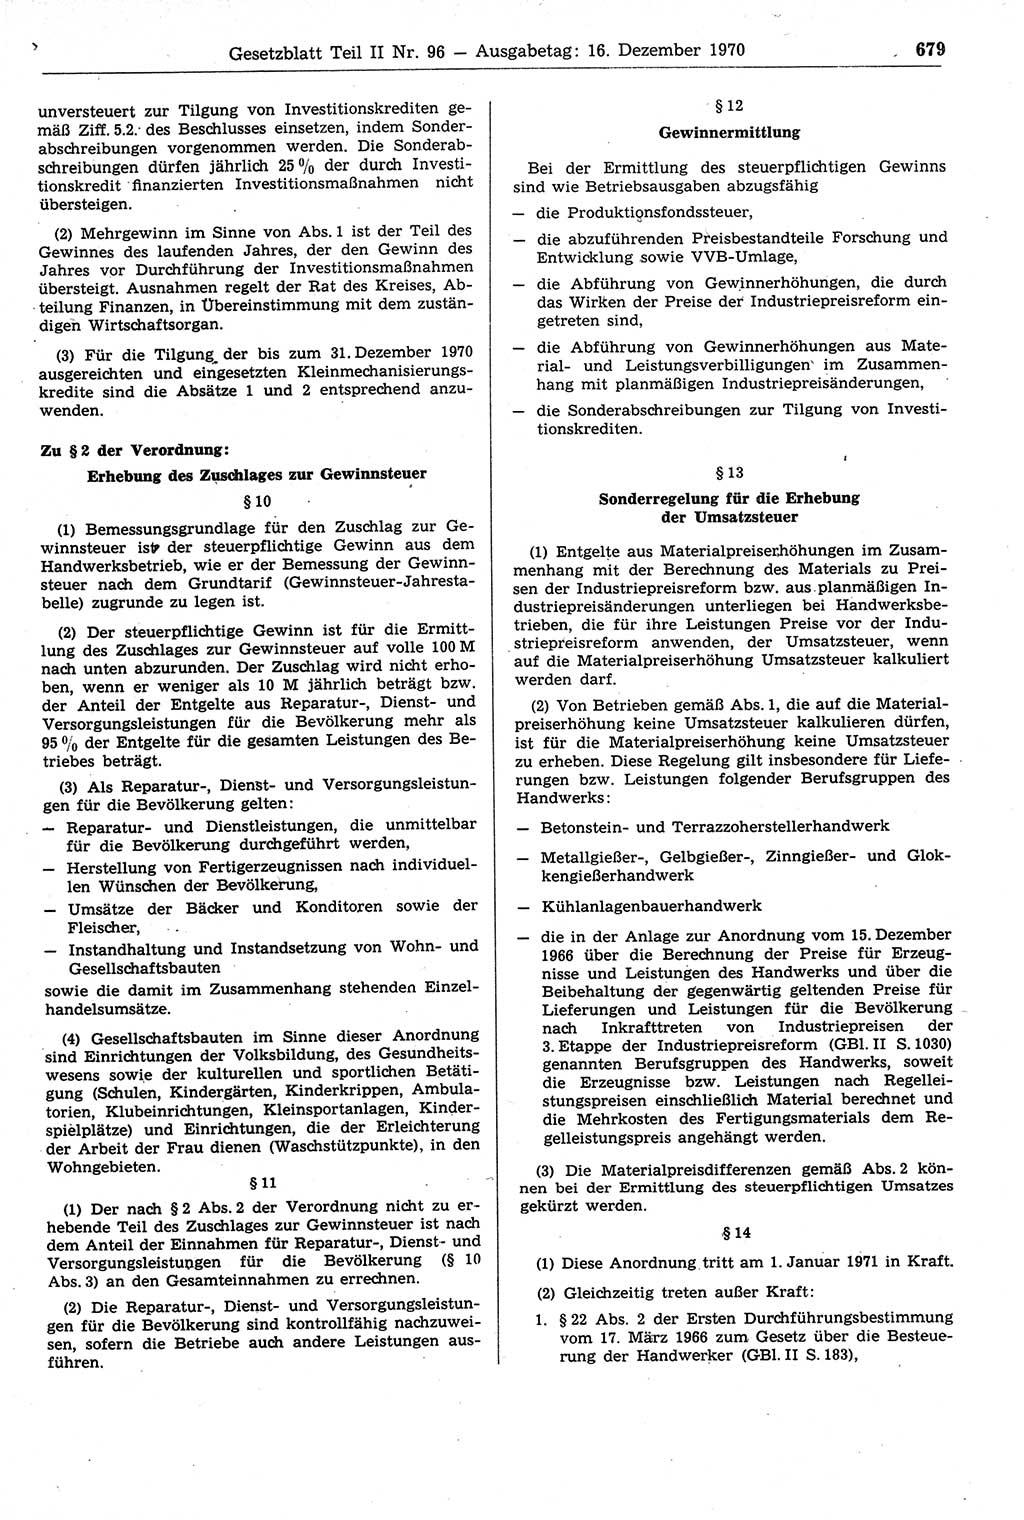 Gesetzblatt (GBl.) der Deutschen Demokratischen Republik (DDR) Teil ⅠⅠ 1970, Seite 679 (GBl. DDR ⅠⅠ 1970, S. 679)